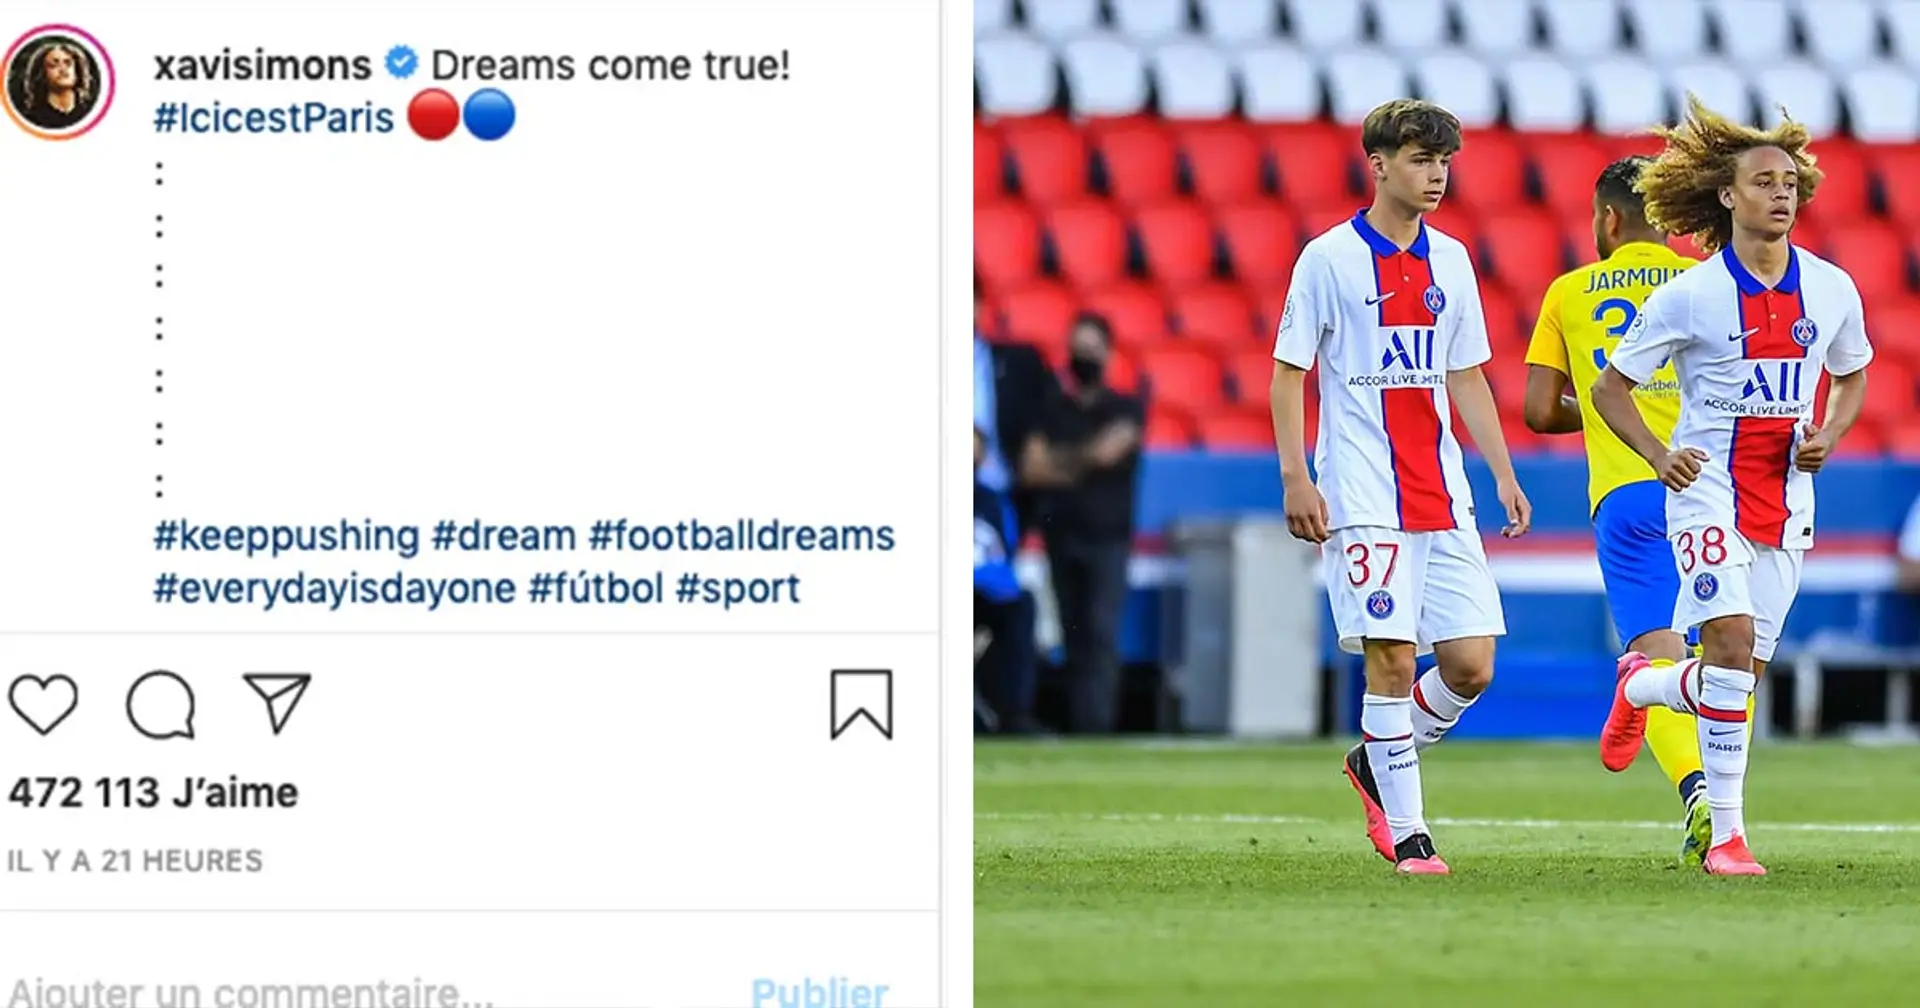 Les titis expriment leur fierté sur Instagram après le match contre Sochaux